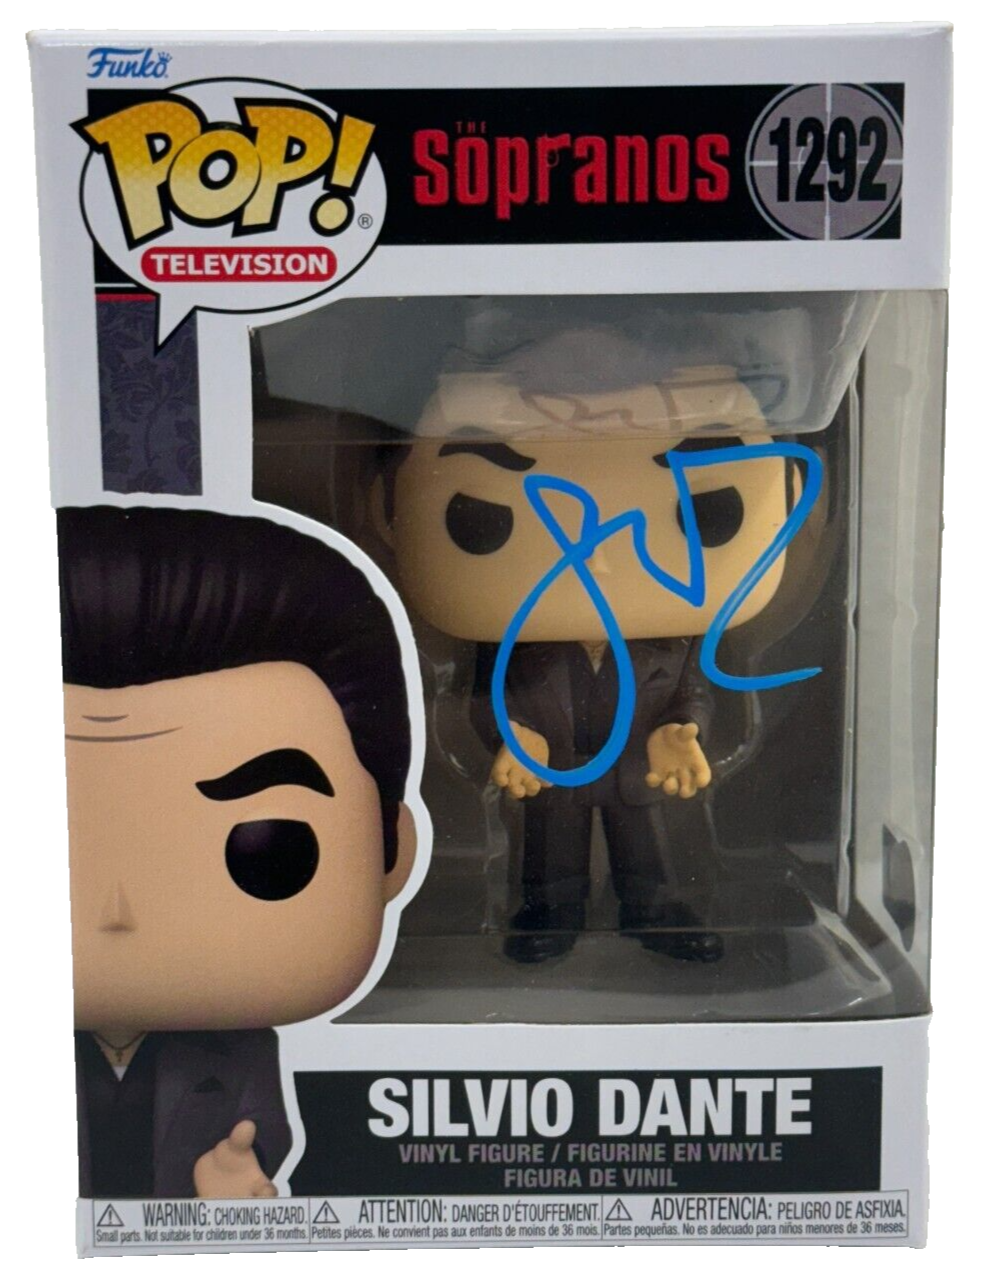 Steven Van Zandt Authentic Autographed Silvio Dante Sopranos 1292 Funko Pop Figure